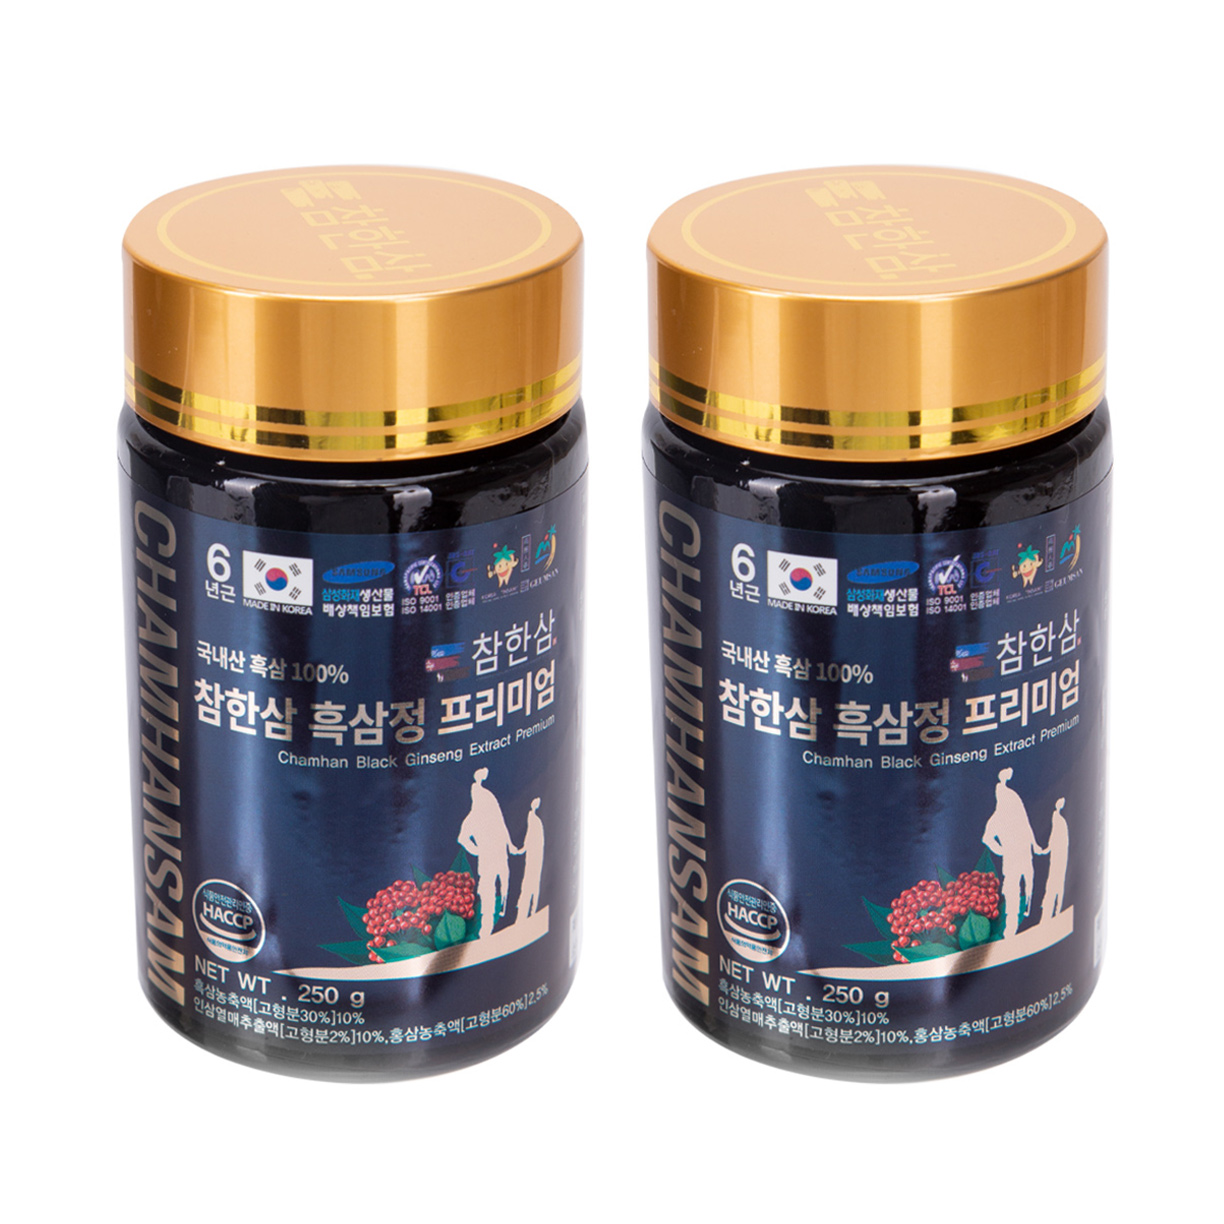 Chamhansam Black Ginseng Extract Premium, густой экстракт черного женьшеня (2 шт. по 250 мл)